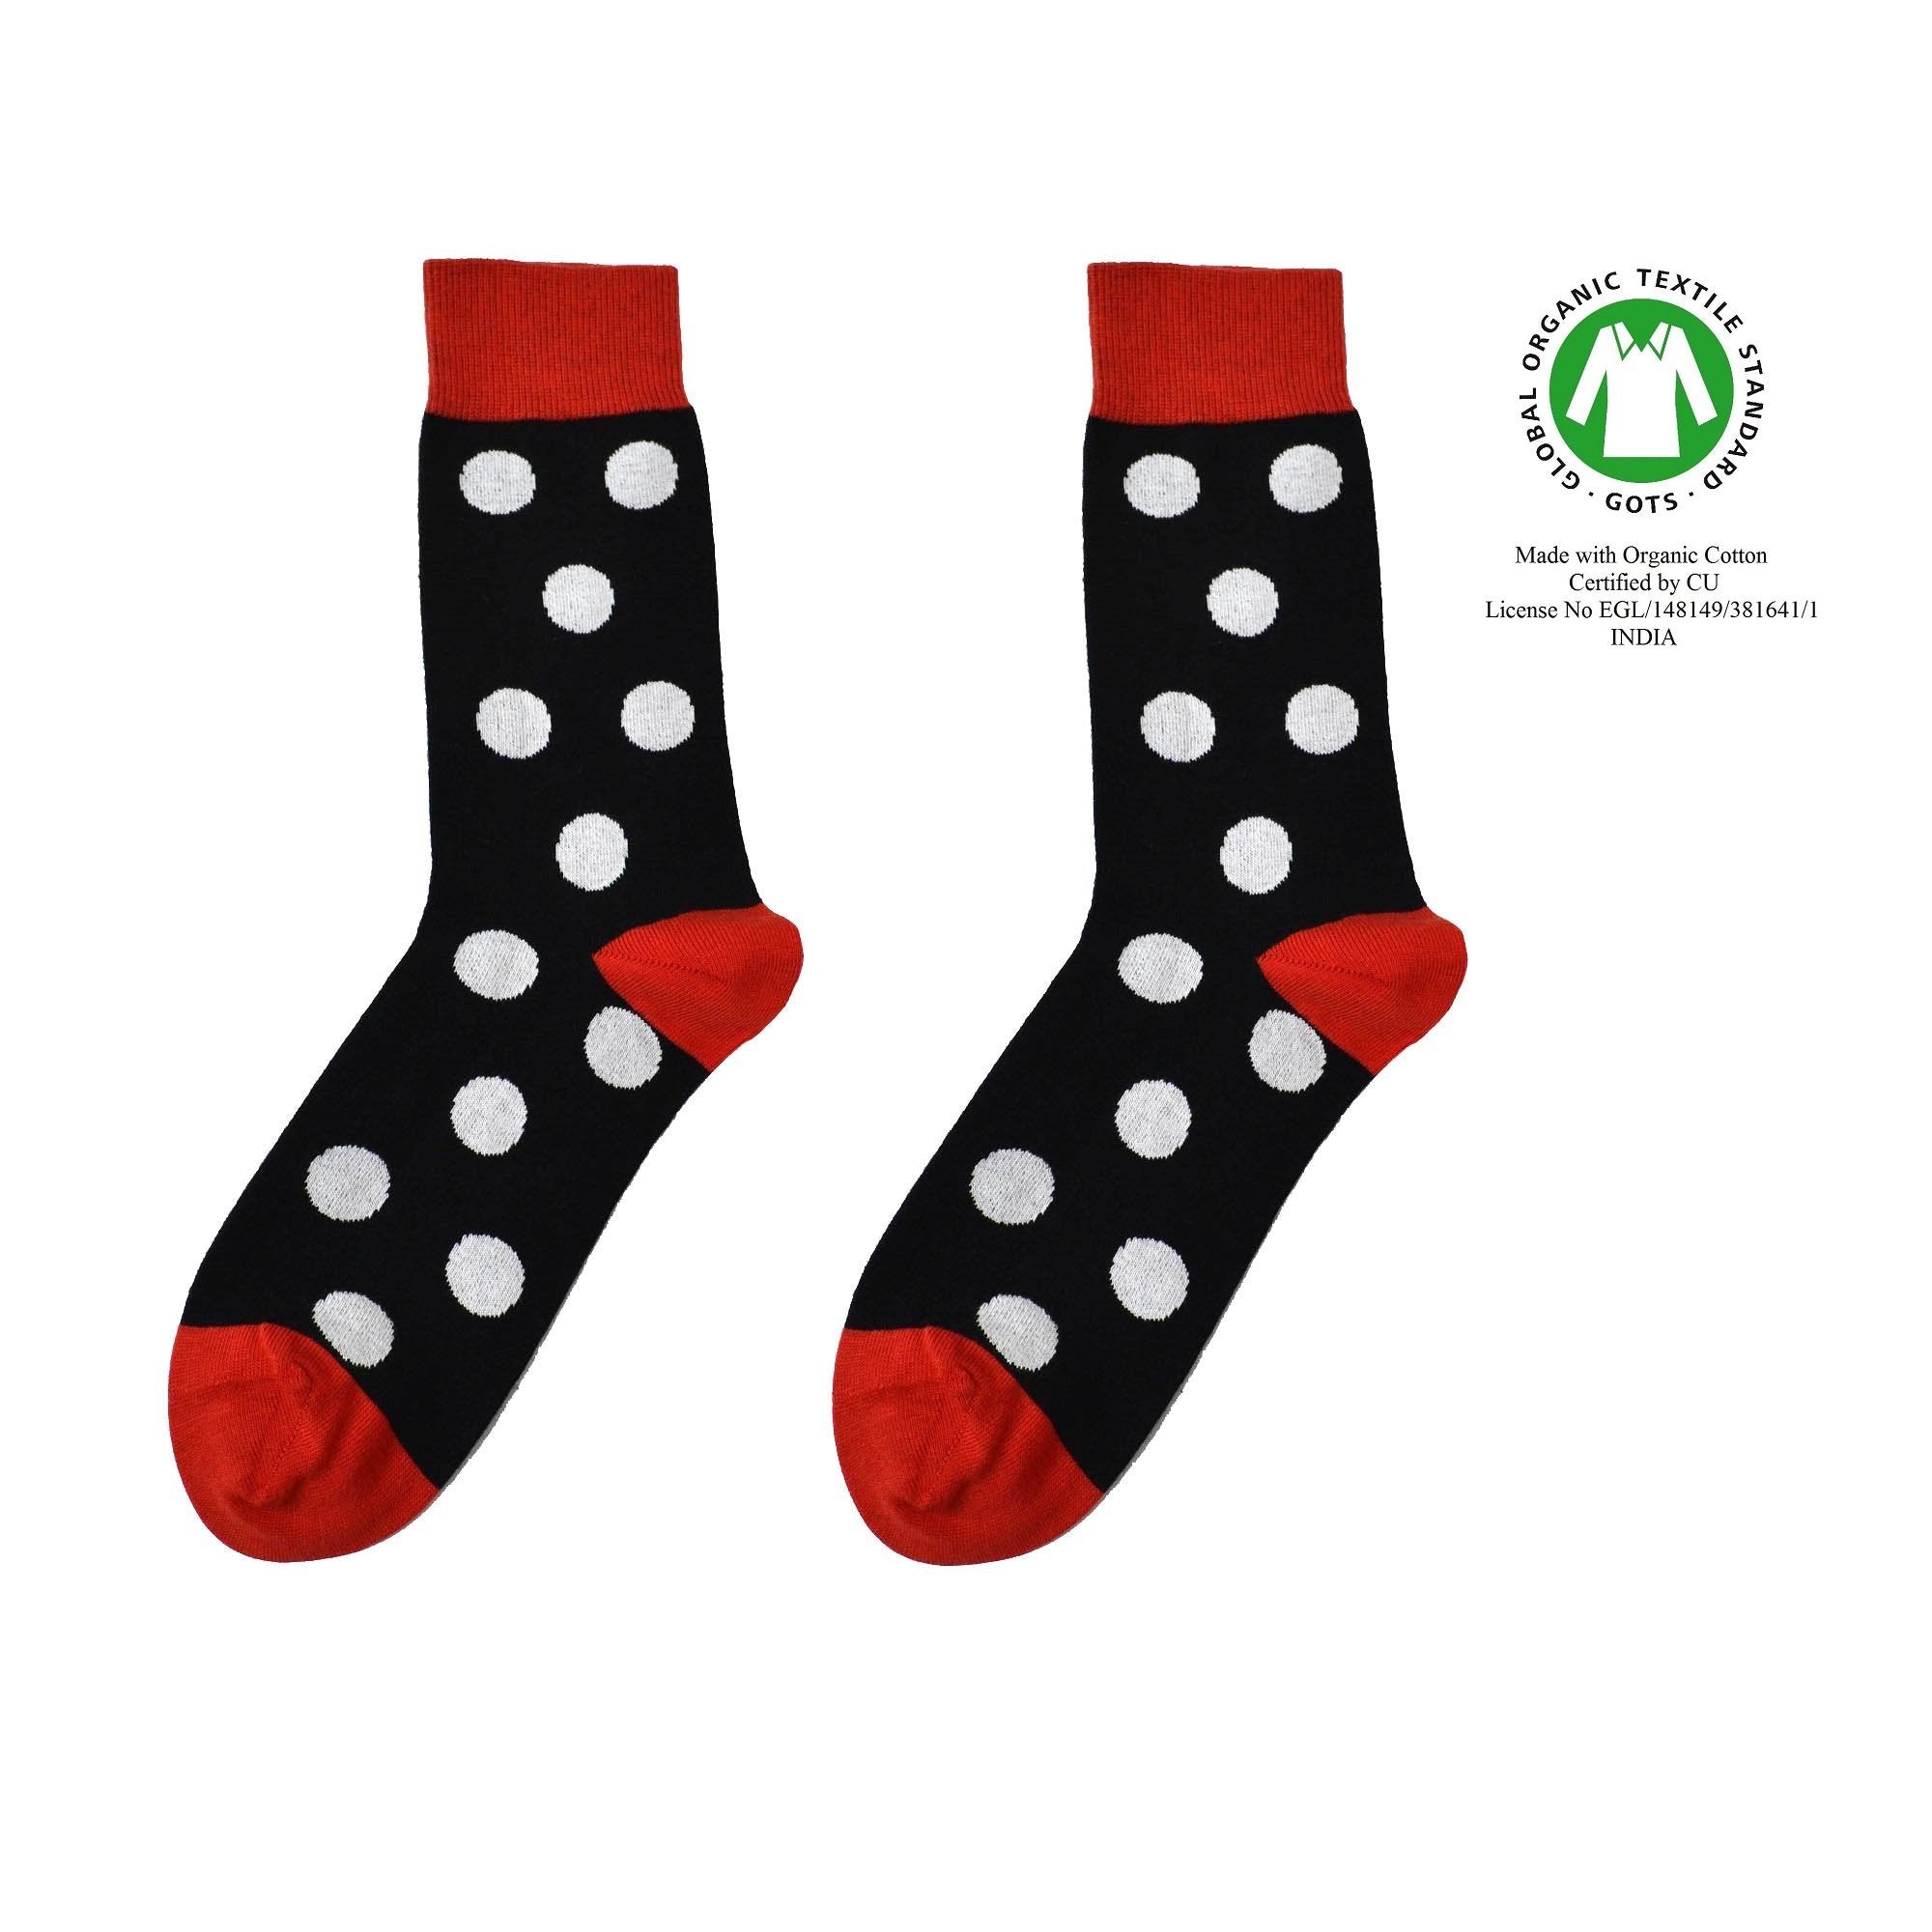 Åberg sok - Organic socks of Sweden